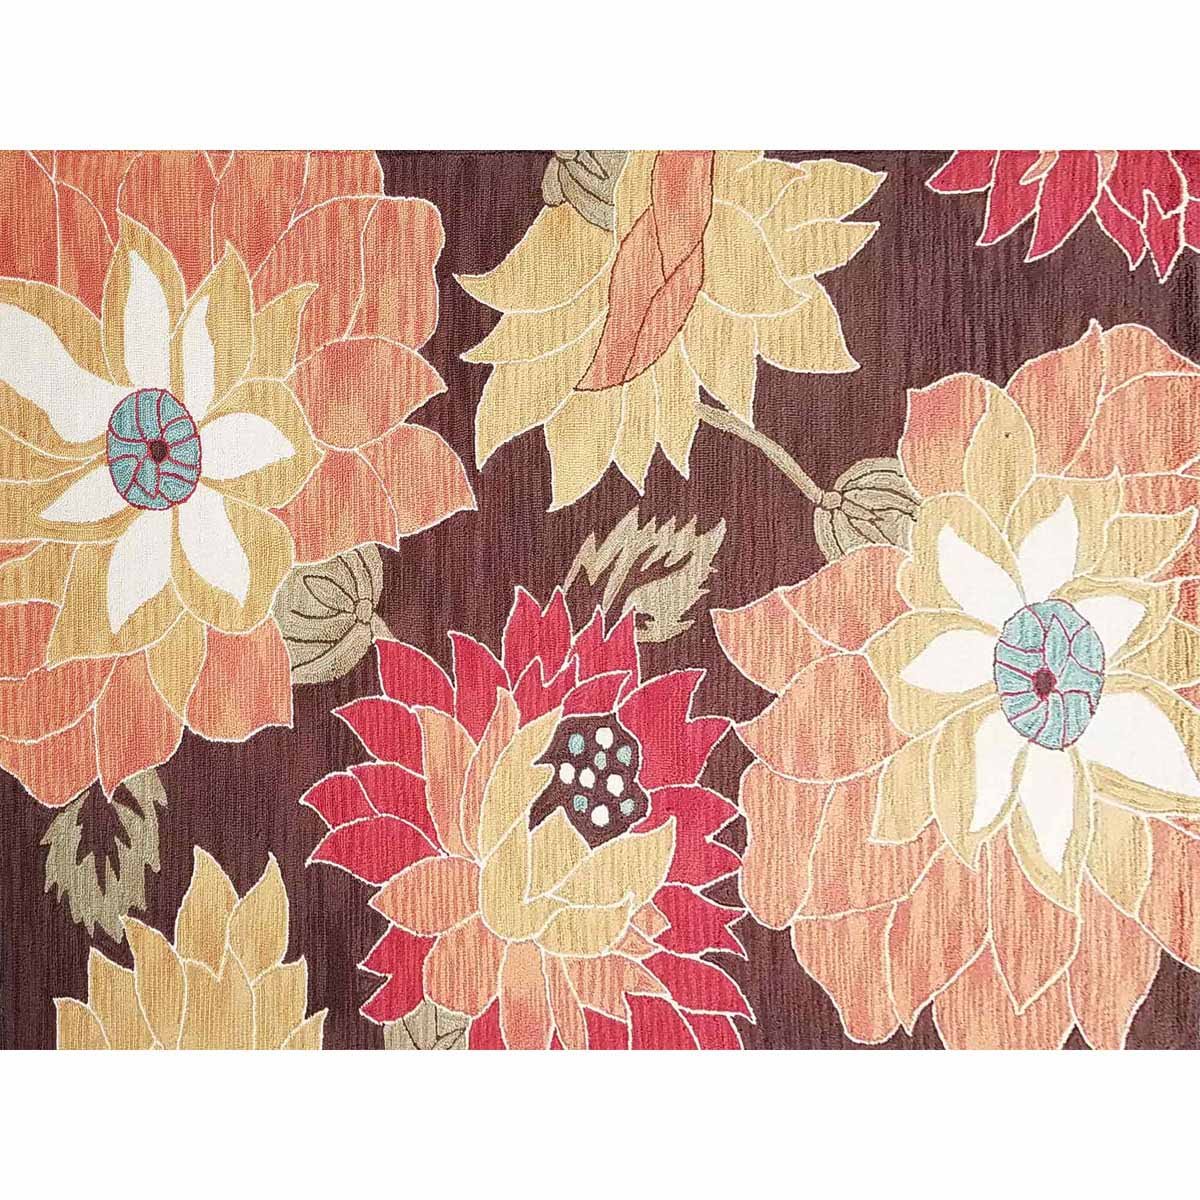 Tapete Sumatra Multicolor 1.52X2.4M. Abbie Textiles